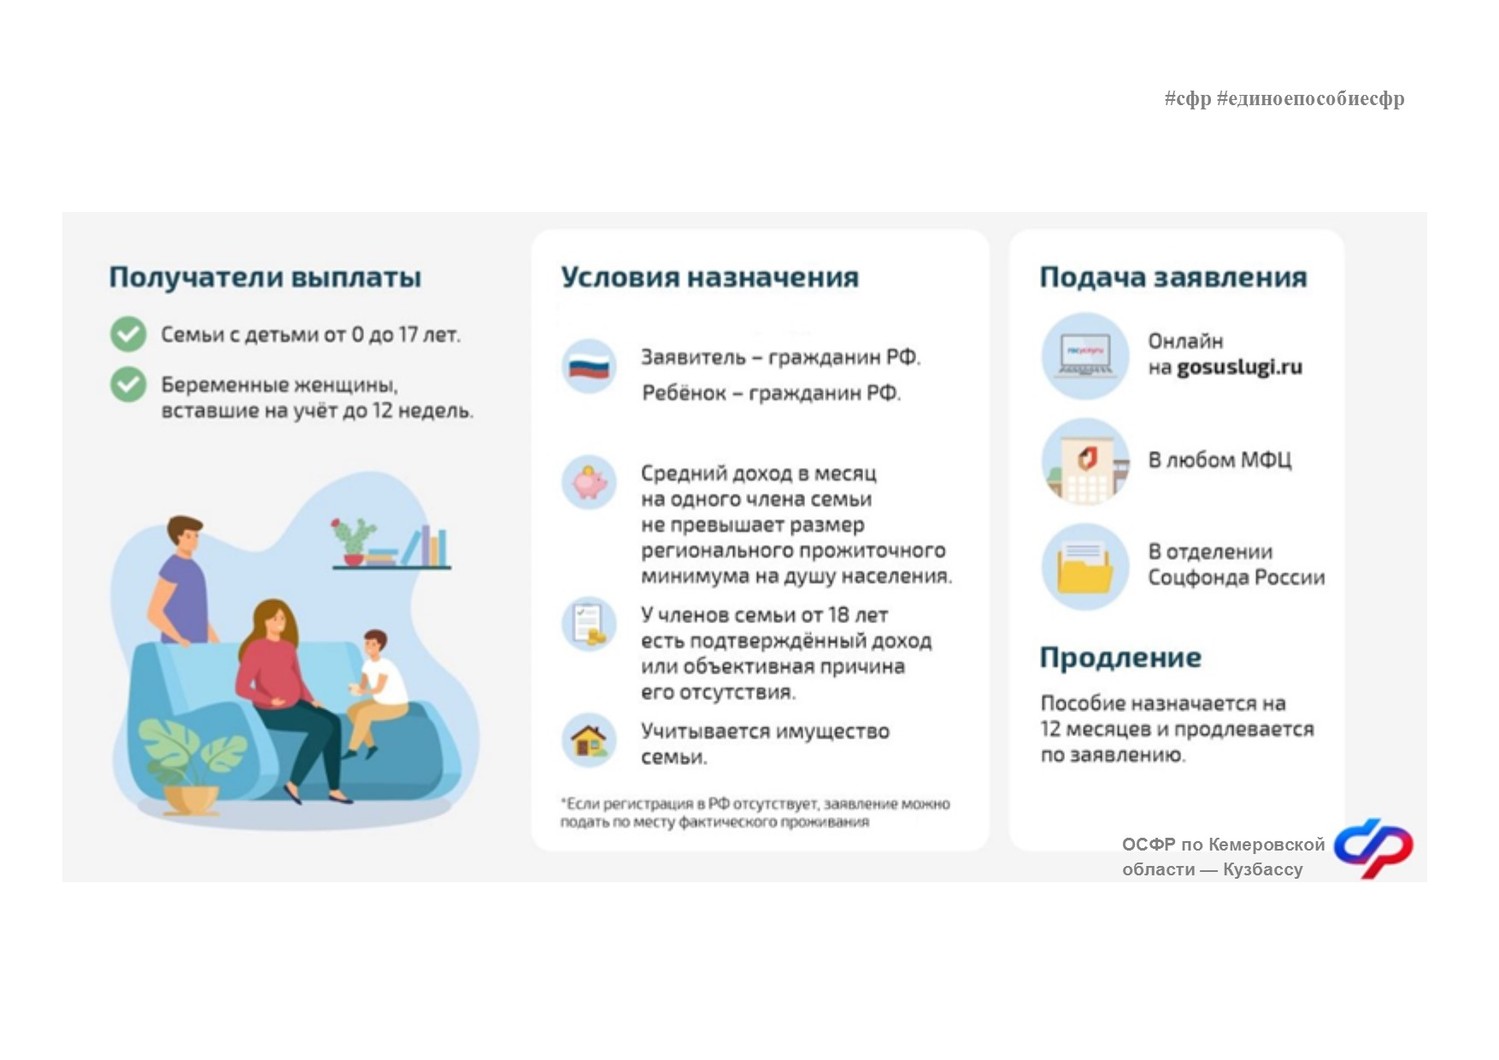 В 2023 году Отделение СФР по Кемеровской области – Кузбассу назначило единое пособие родителям 99 тысяч детей